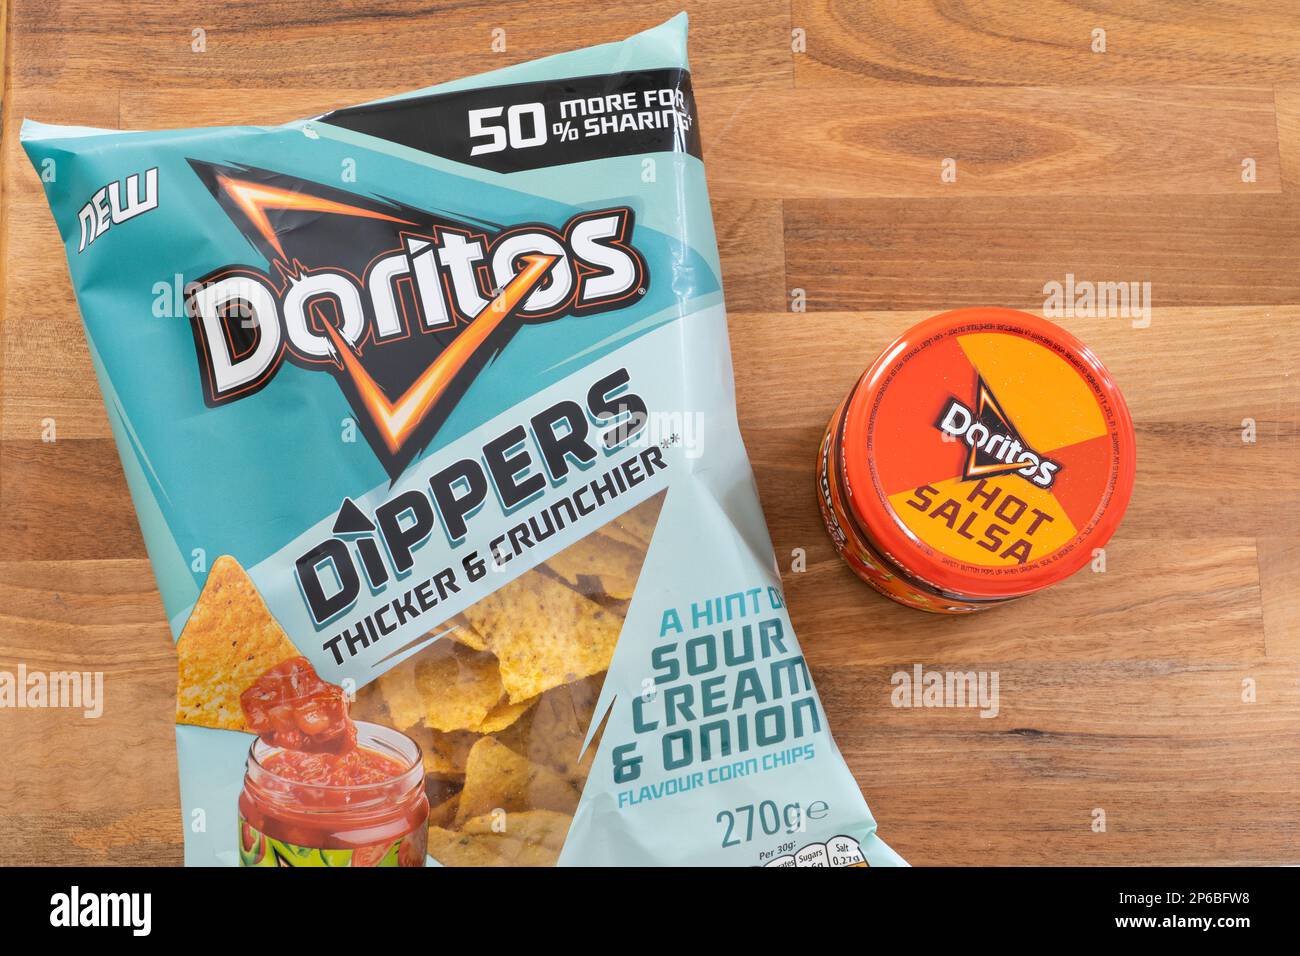 Doritos saure Sahne und Zwiebelchips (Chips) in einem Beutel mit einer heißen Salsa-Sauce von Doritos nebenan. UK. Thema: Snacks, Partyessen Stockfoto